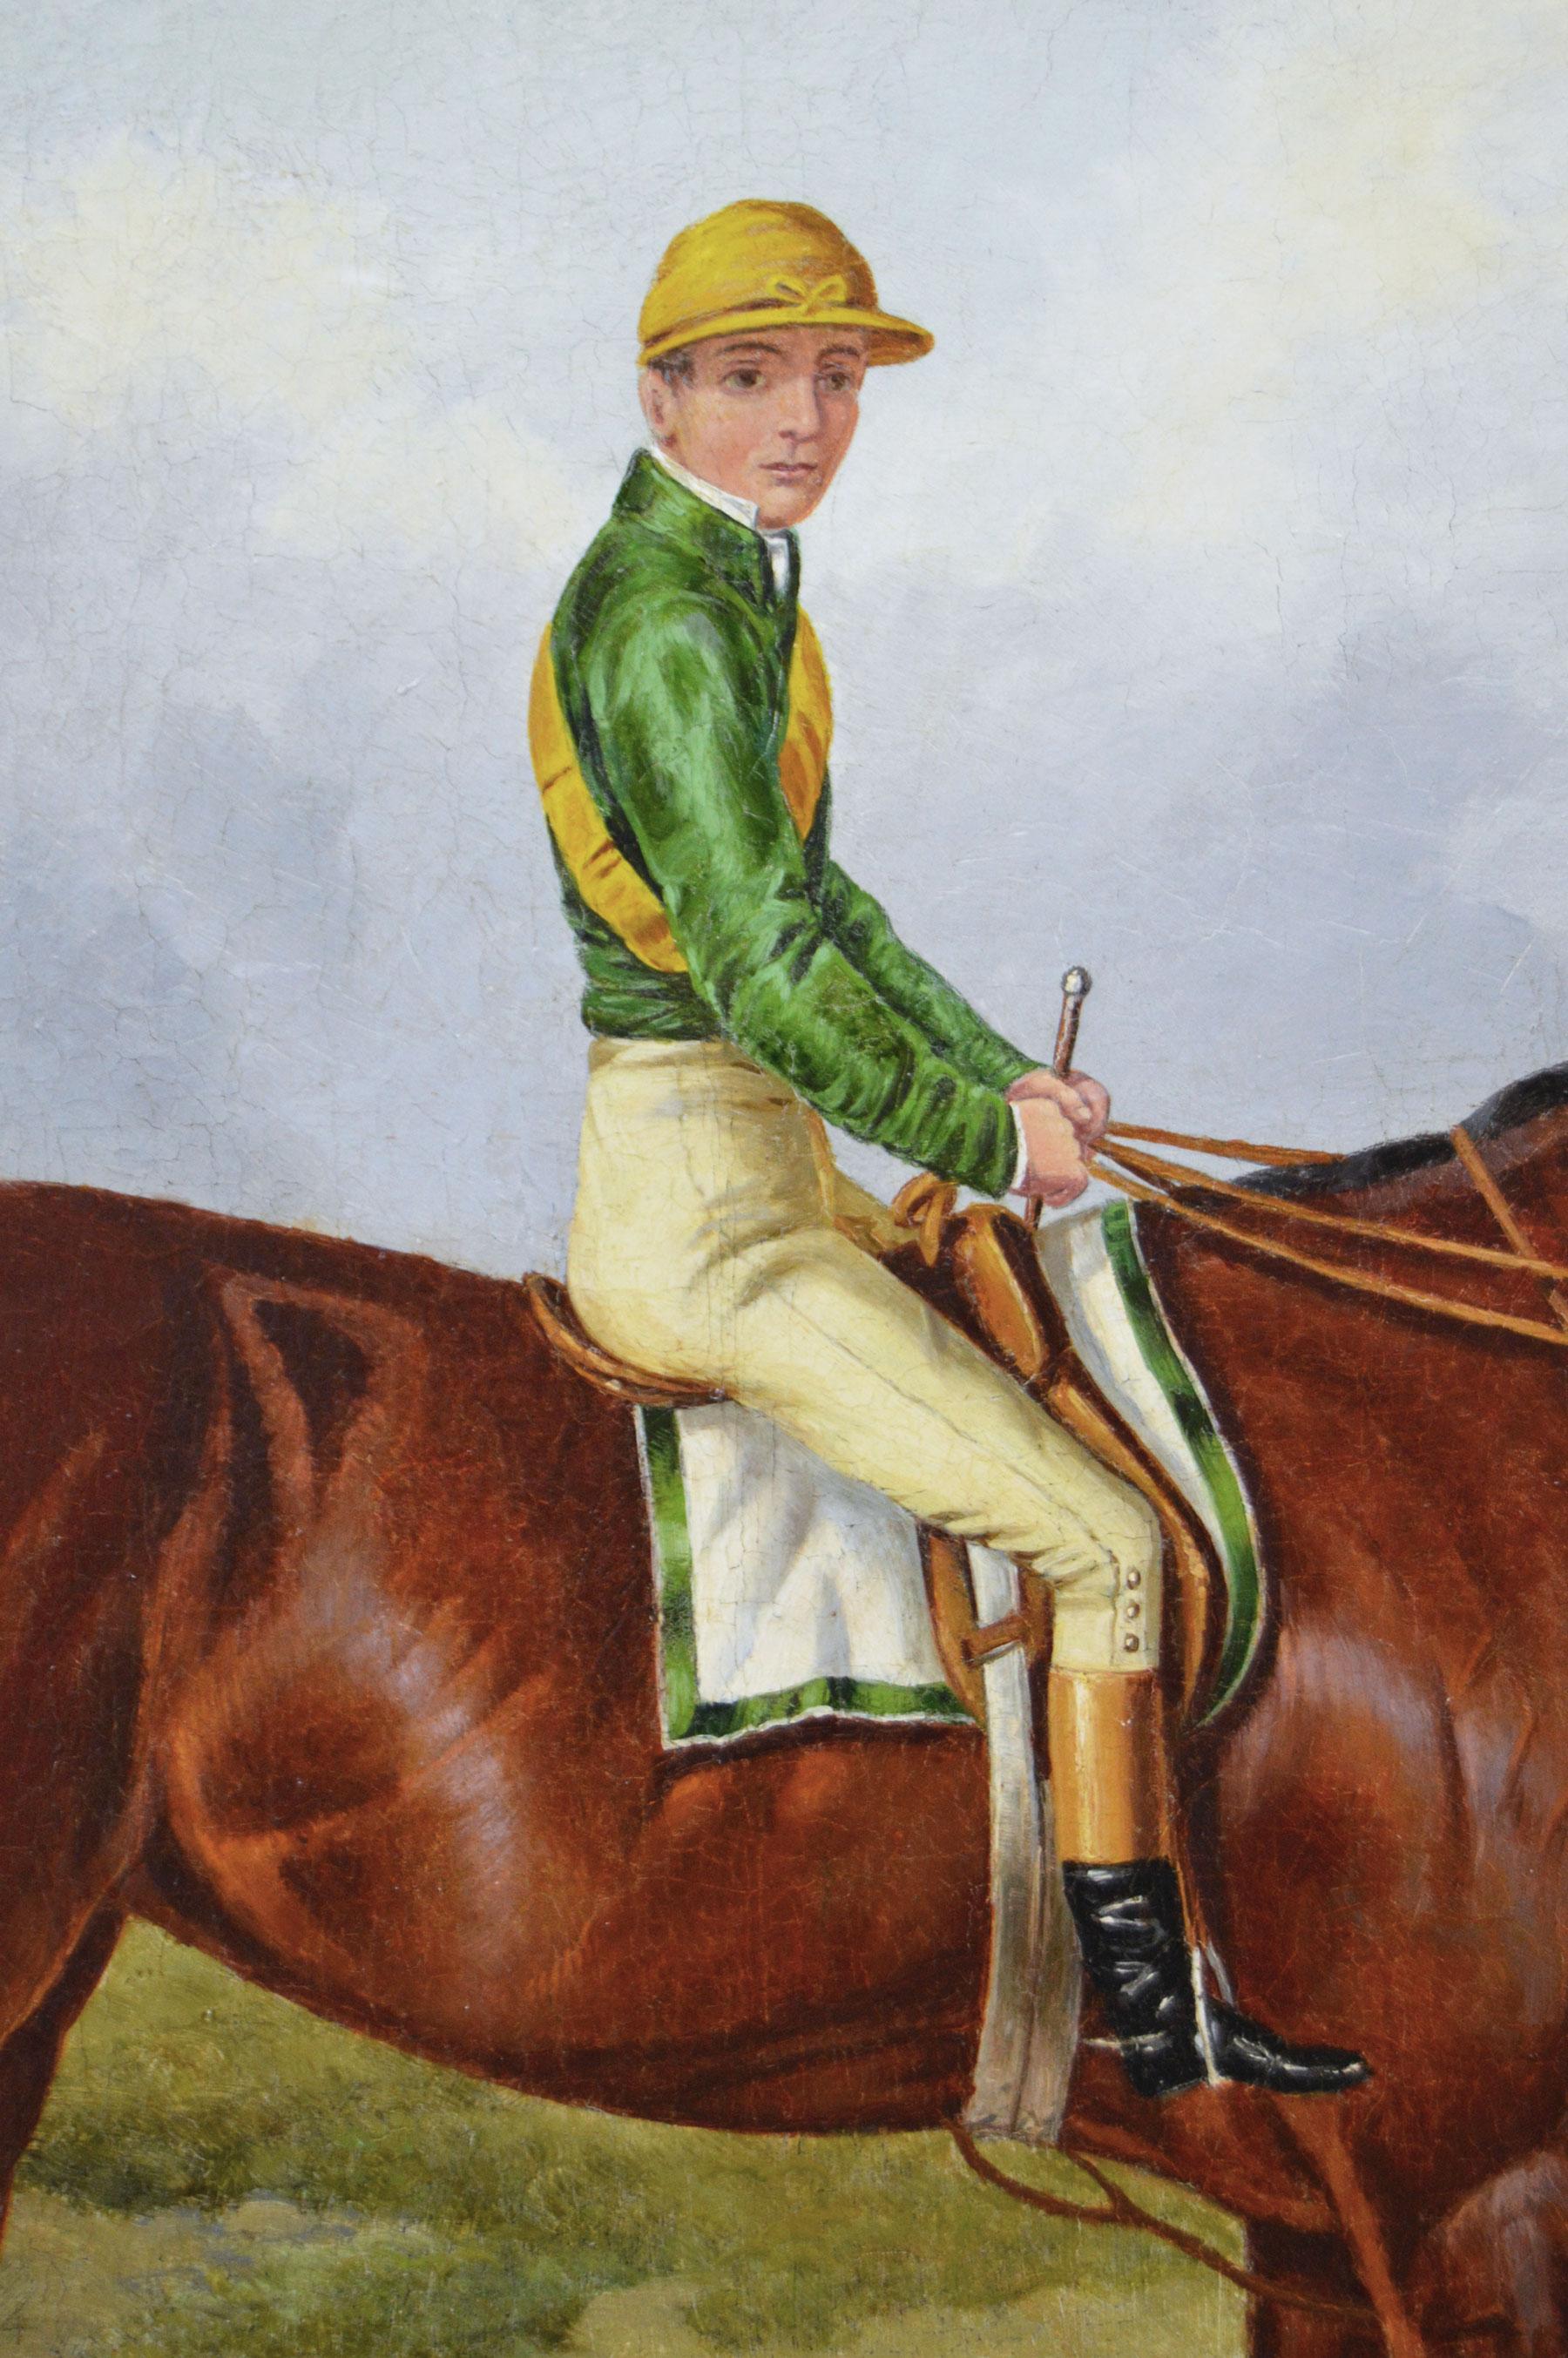 Harry Hall
Britannique, (1815-1882)
Blink Bonny
Huile sur toile, signée et datée de 1857
Taille de l'image : 25 pouces x 31 pouces 
Dimensions, y compris le cadre : 32.25 pouces x 38.25 pouces

Ce portrait de cheval de sport bien exécuté par Harry